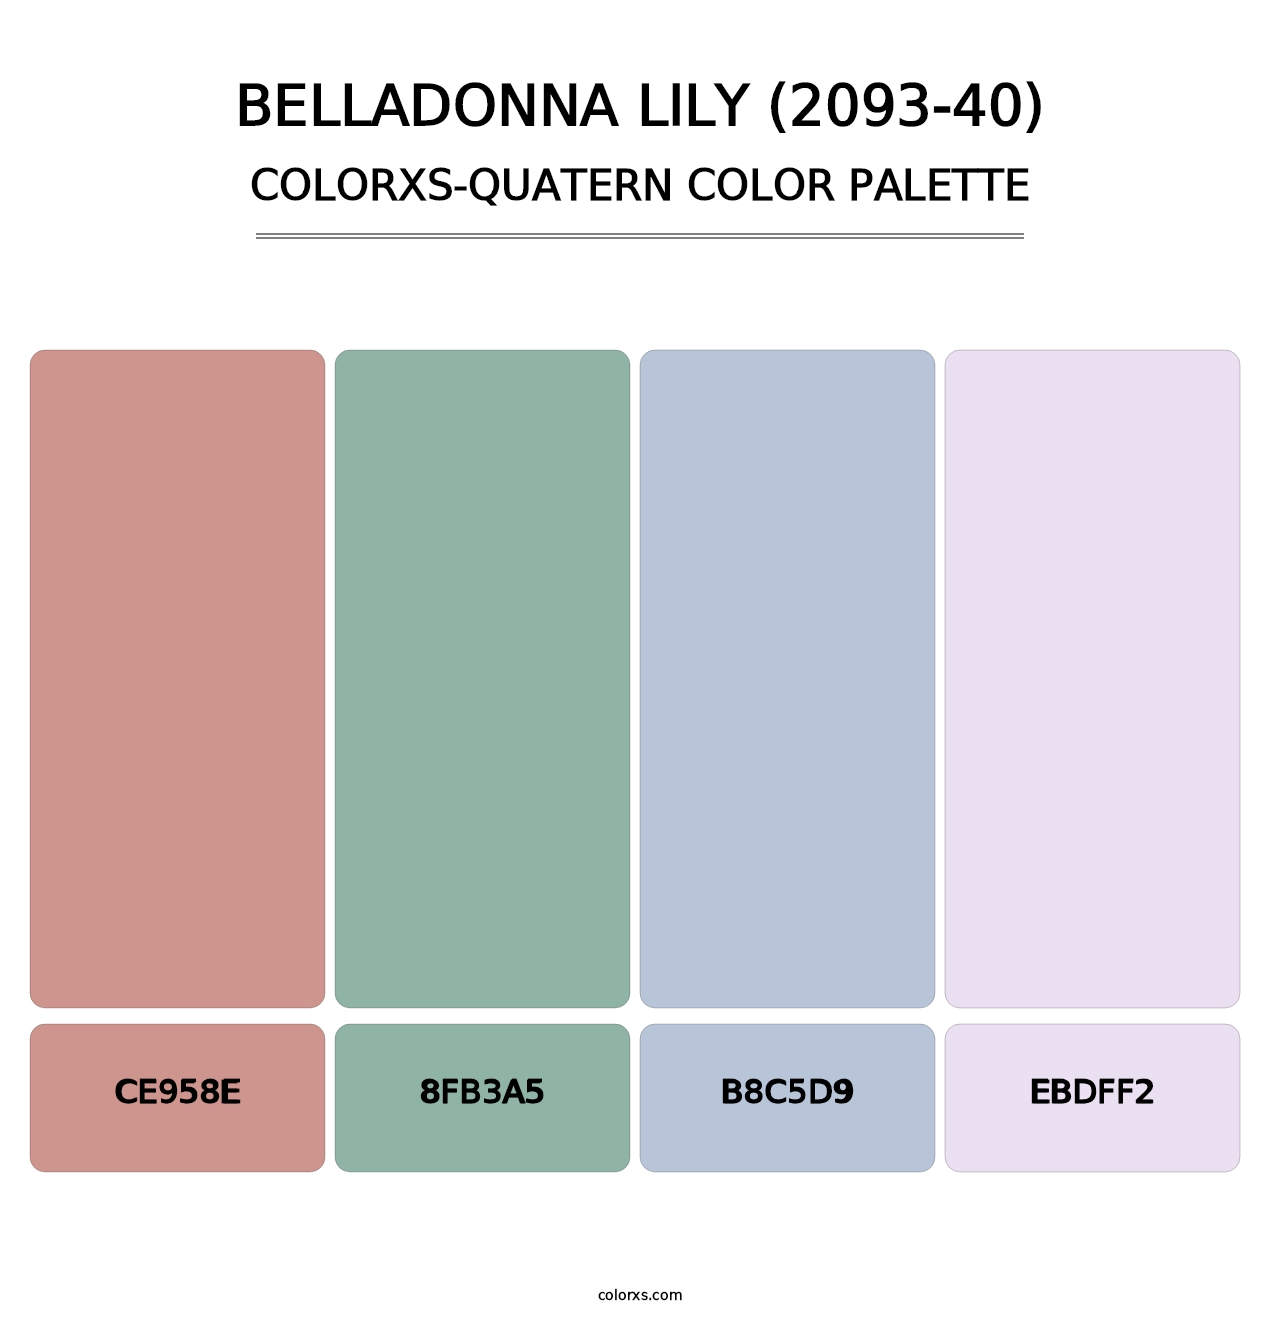 Belladonna Lily (2093-40) - Colorxs Quatern Palette